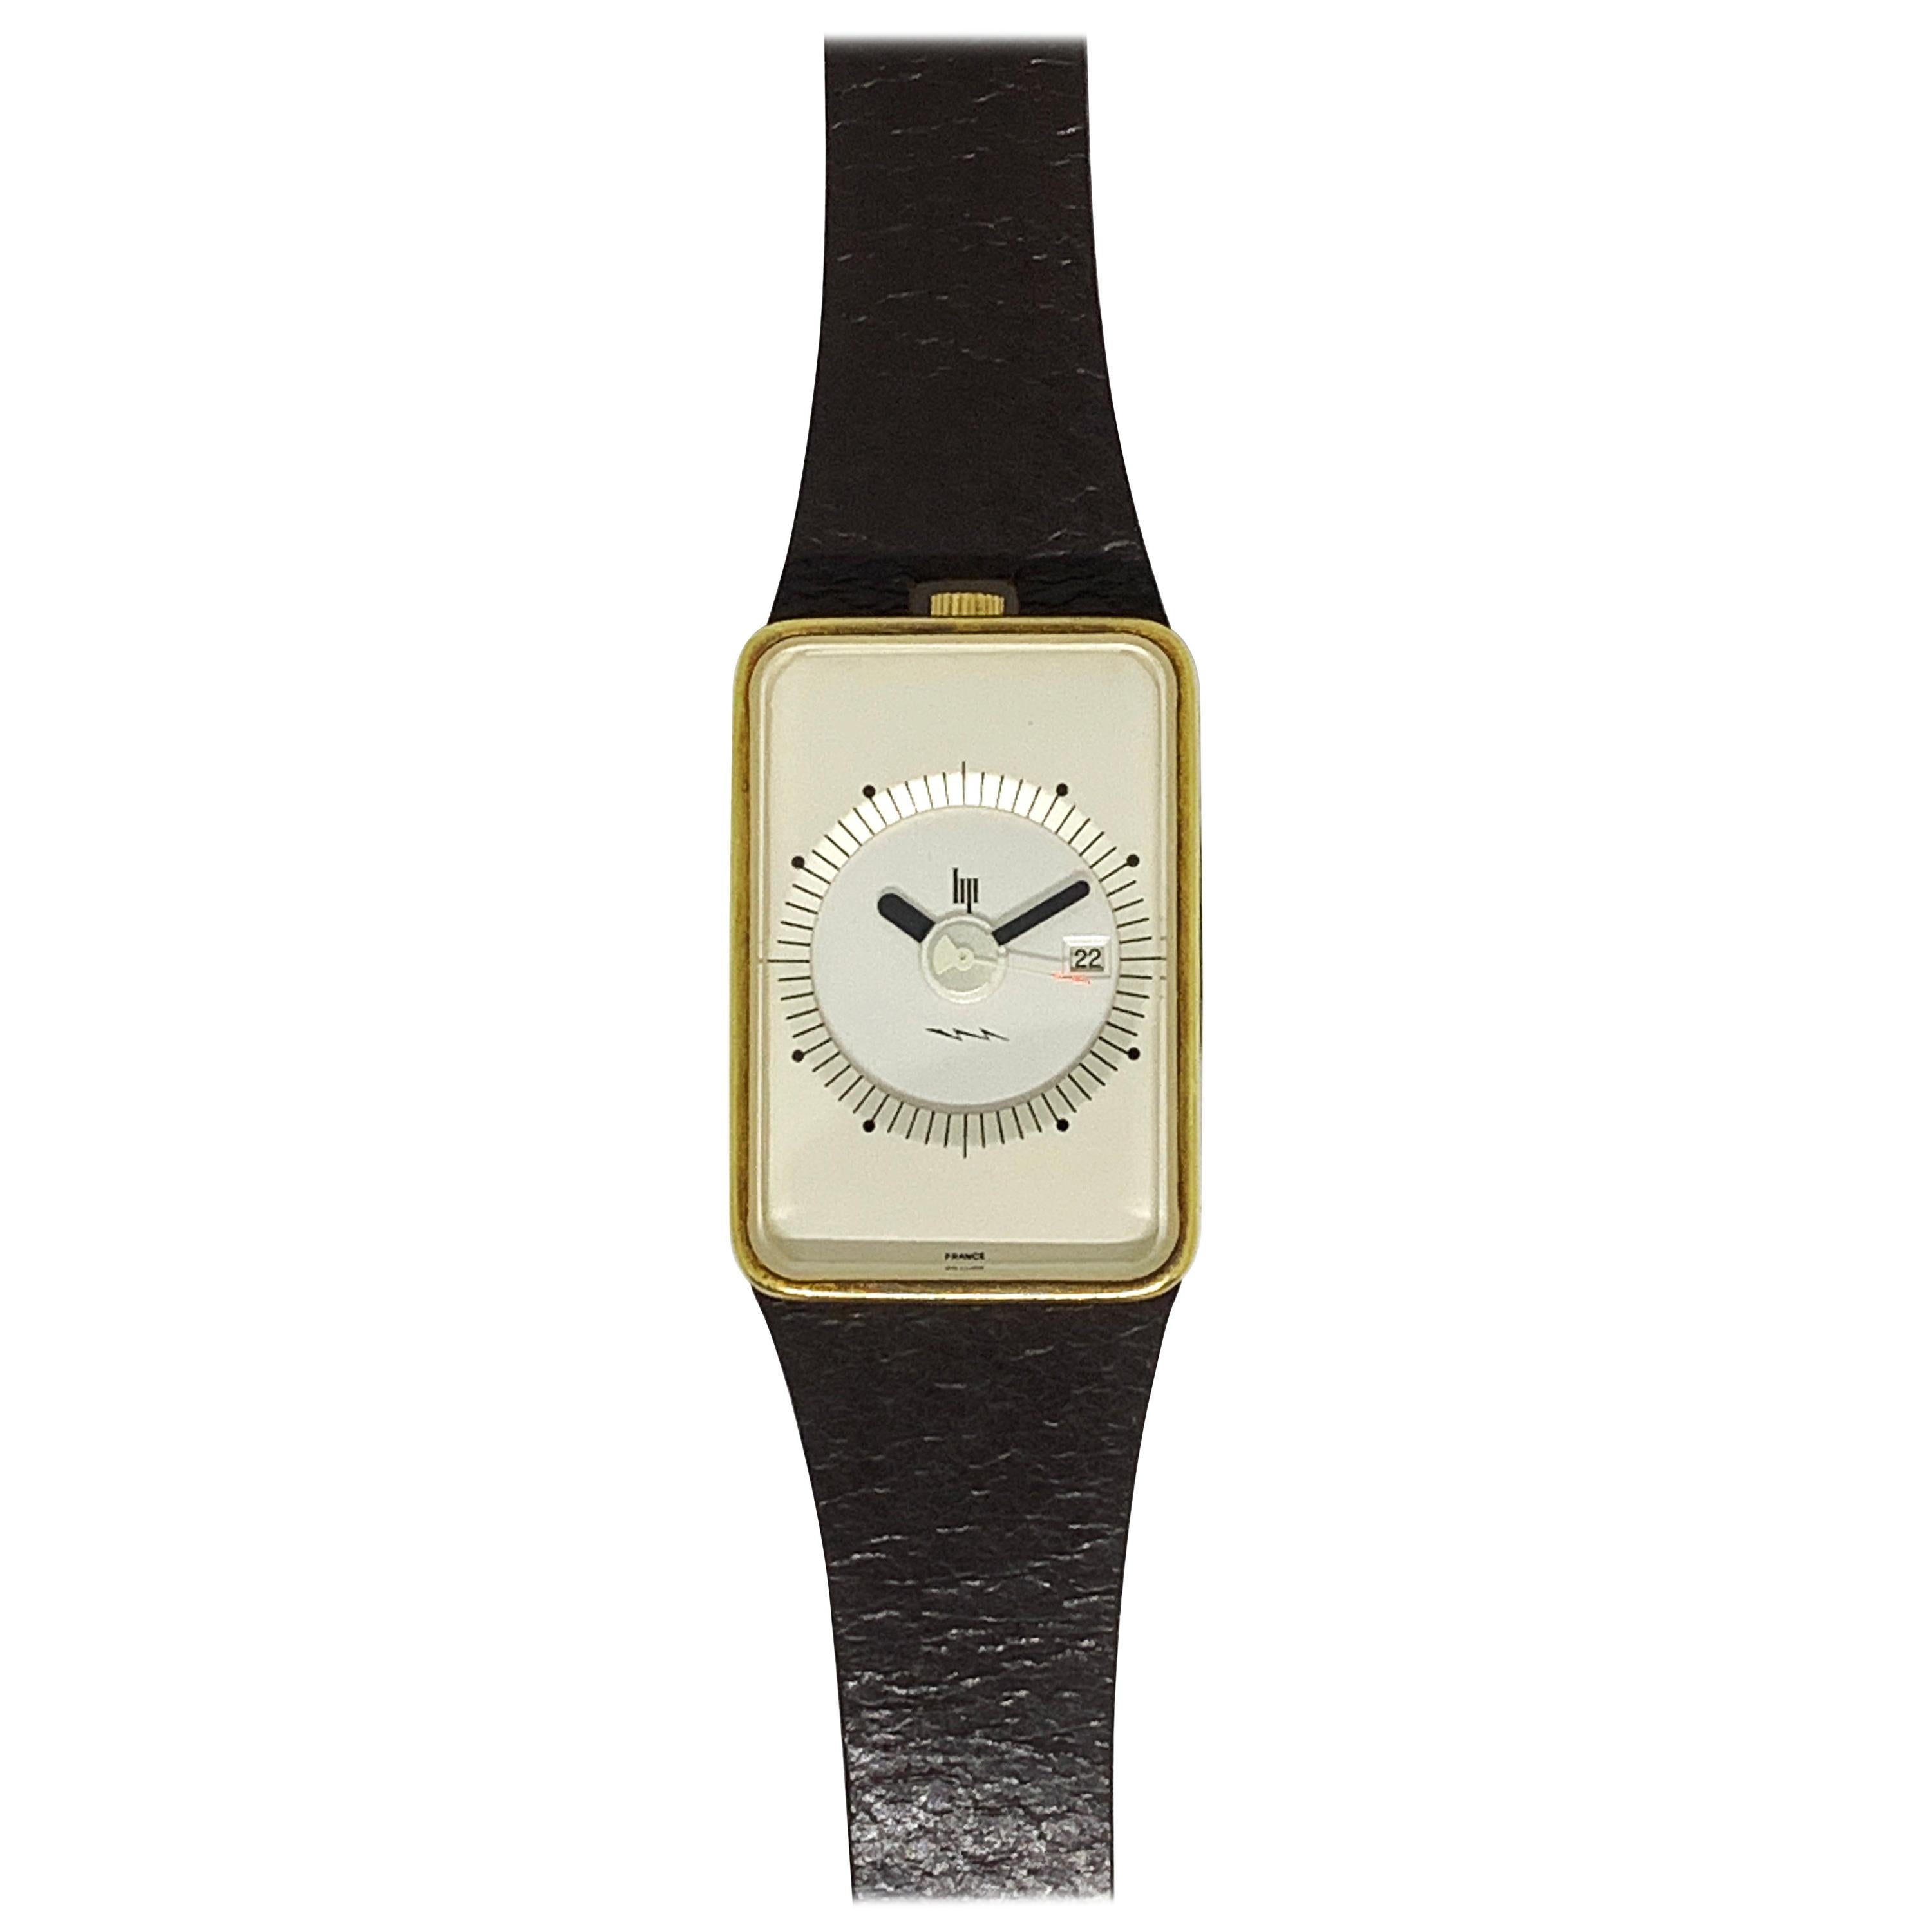 LIP Frigidaire Watch Design Roger Heel